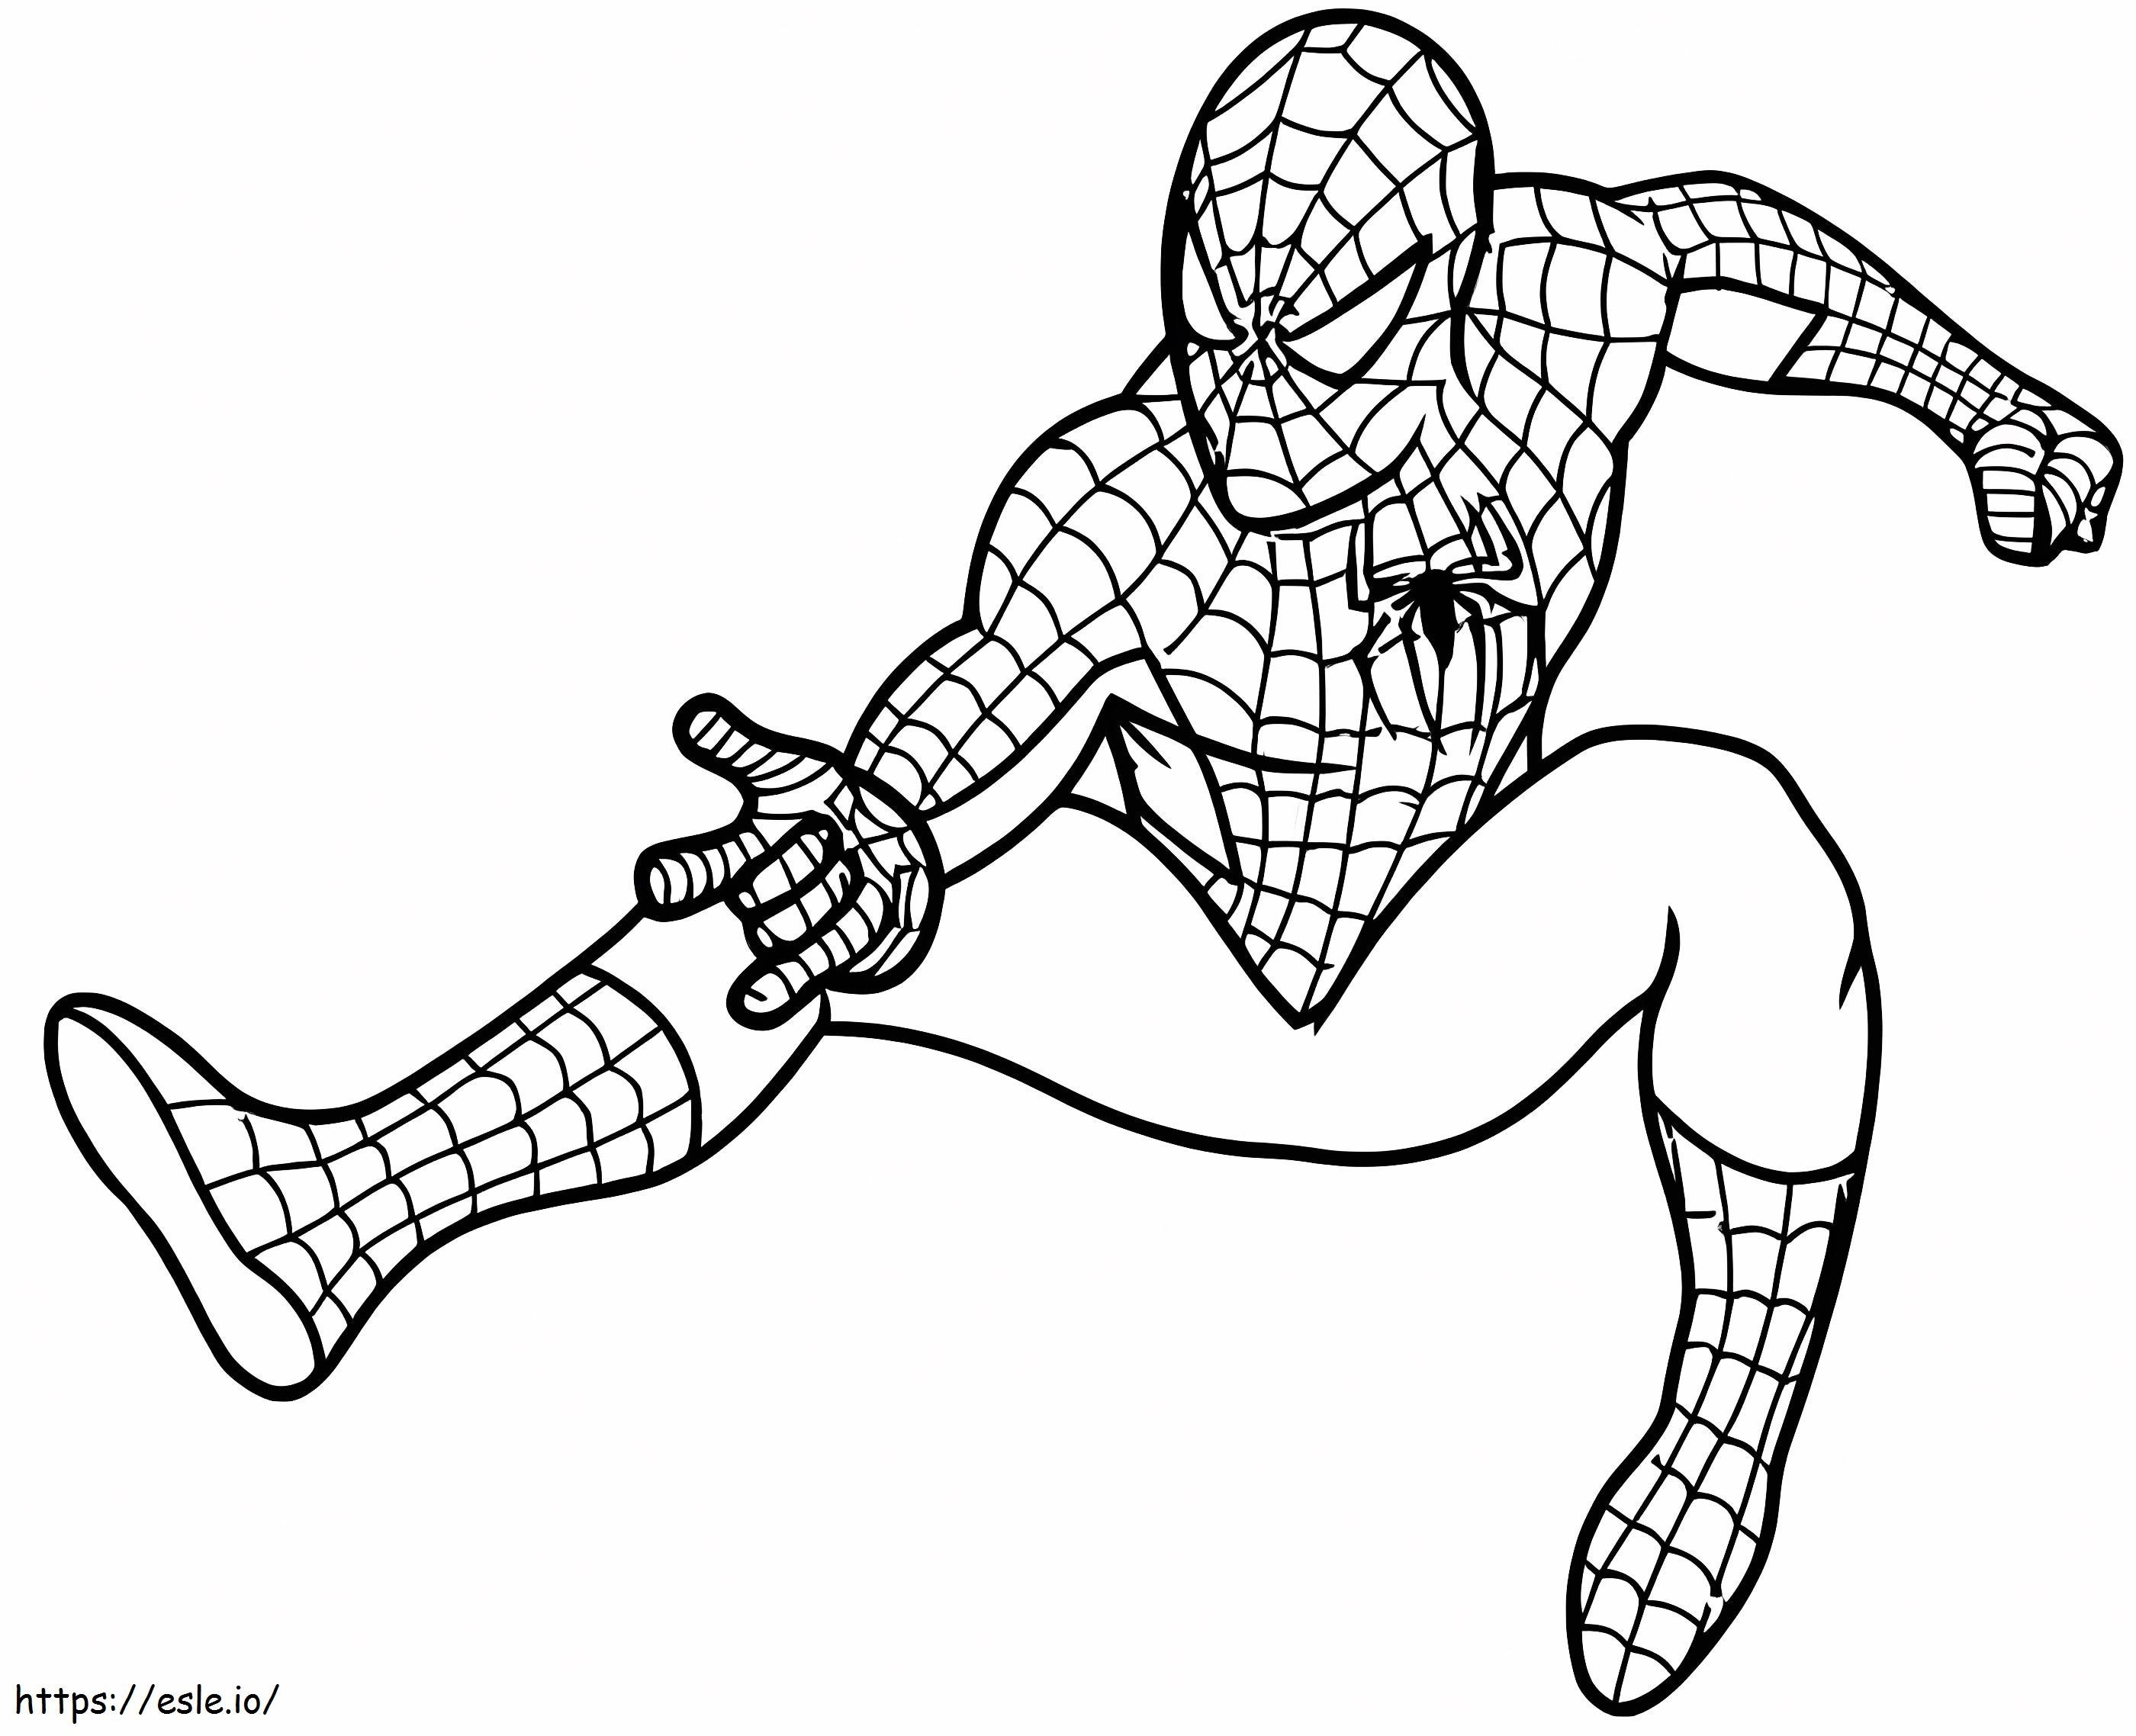 Coloriage Images gratuites de Spider Man à imprimer dessin